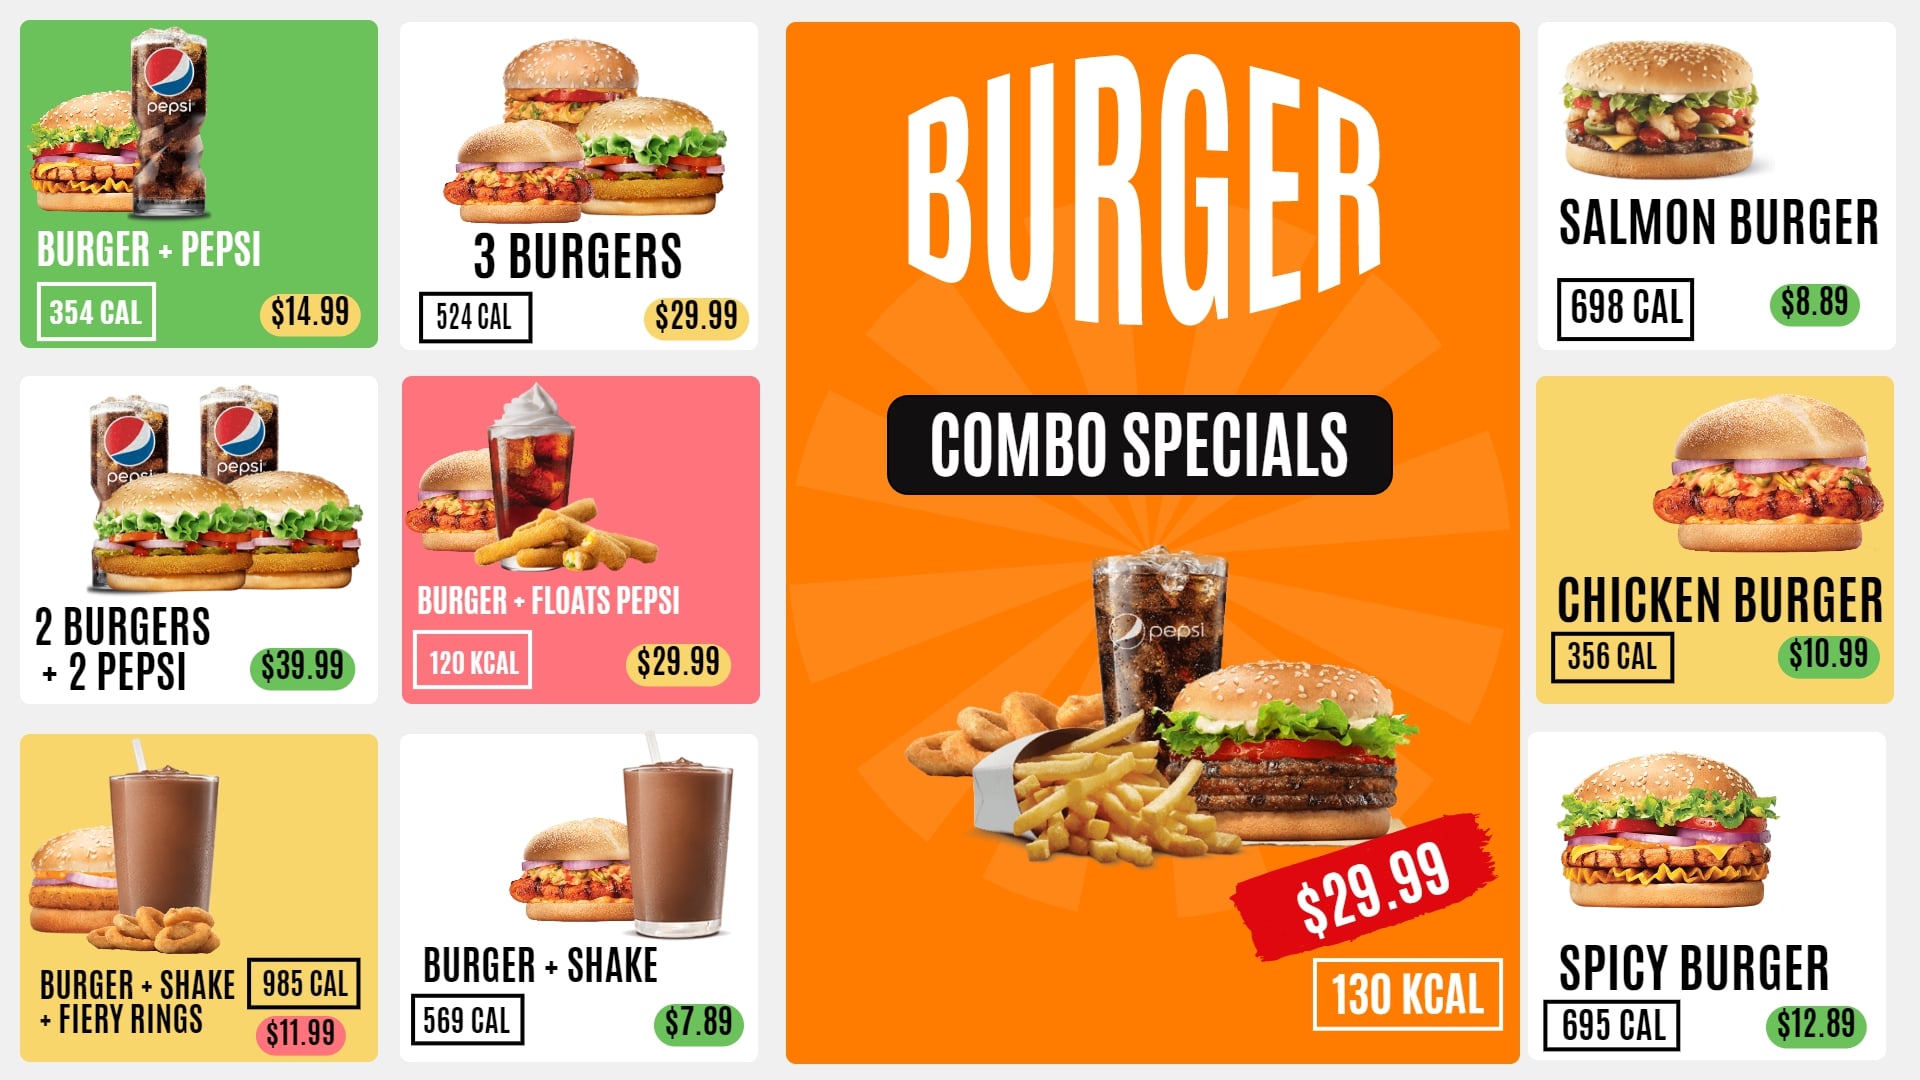 display food calories on menu boards